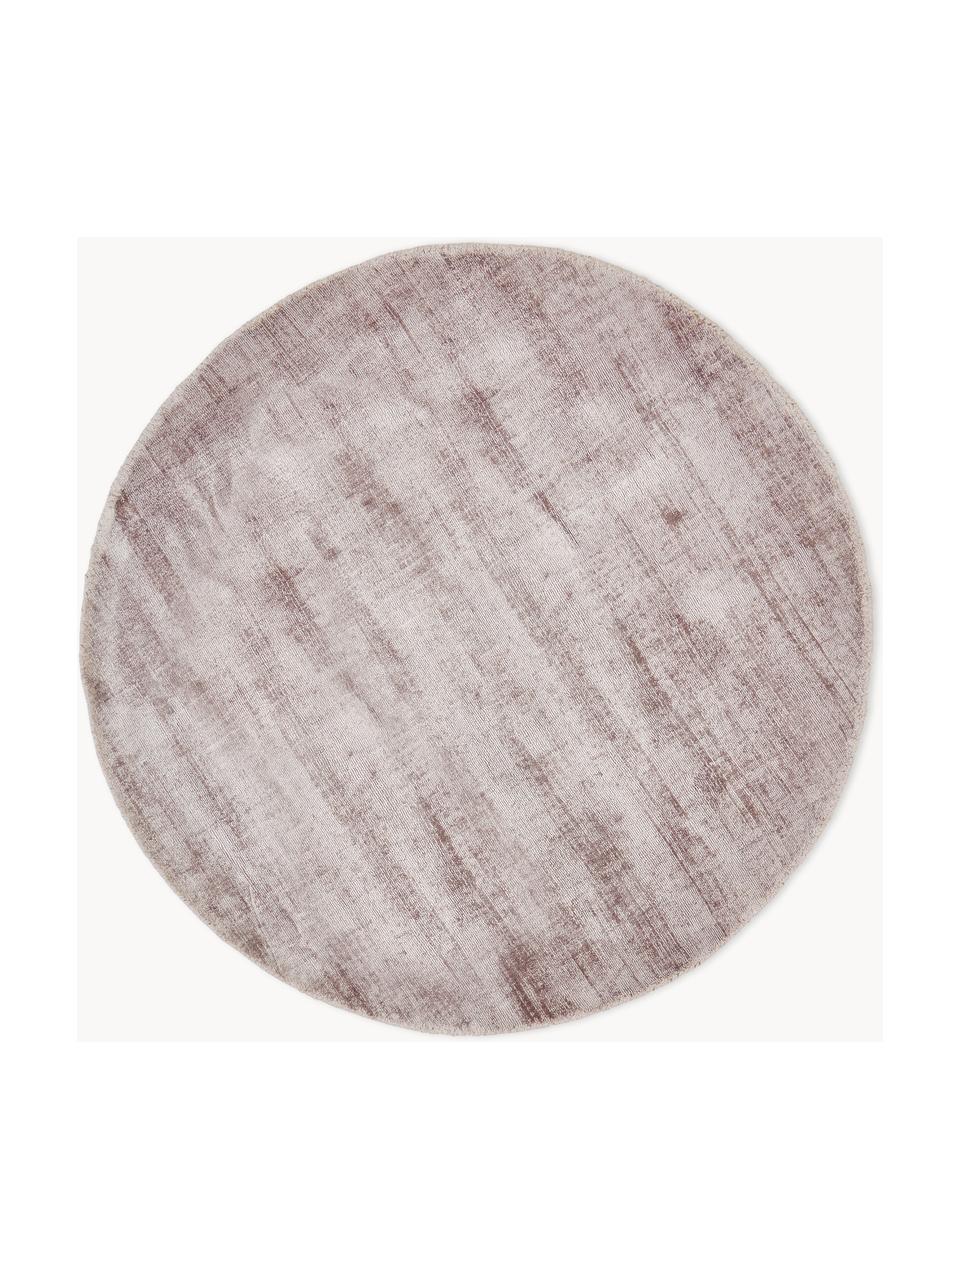 Rond viscose vloerkleed Jane, handgeweven, Onderzijde: 100% katoen Het in dit pr, Lavendel, Ø 115 cm (maat S)